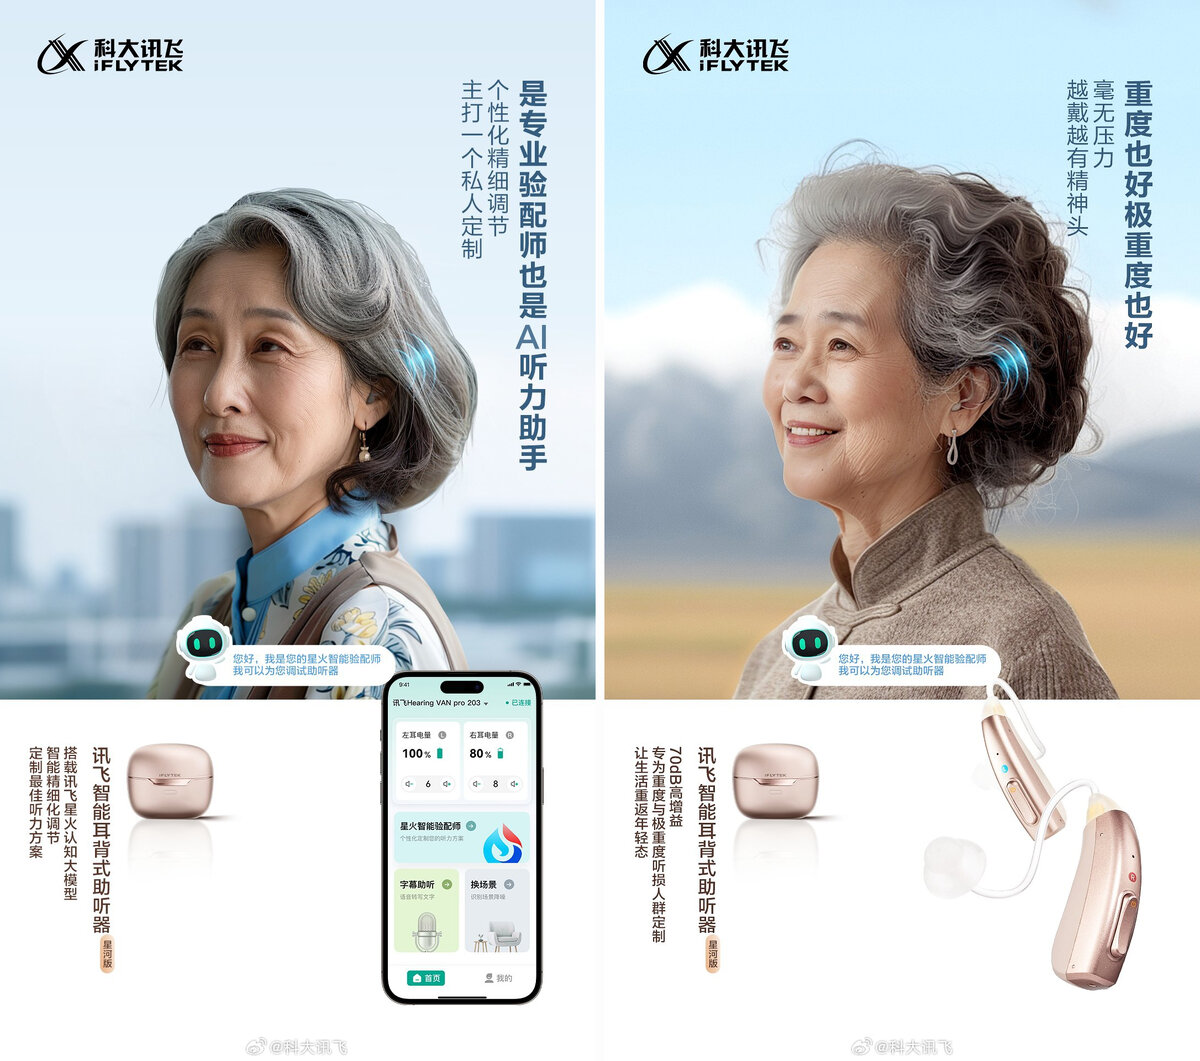 На внутреннем рынке Китая появились слуховые аппараты, которые снабжены искусственным интеллектом. ИИ автоматически меняет громкость и переводит речь в текст.